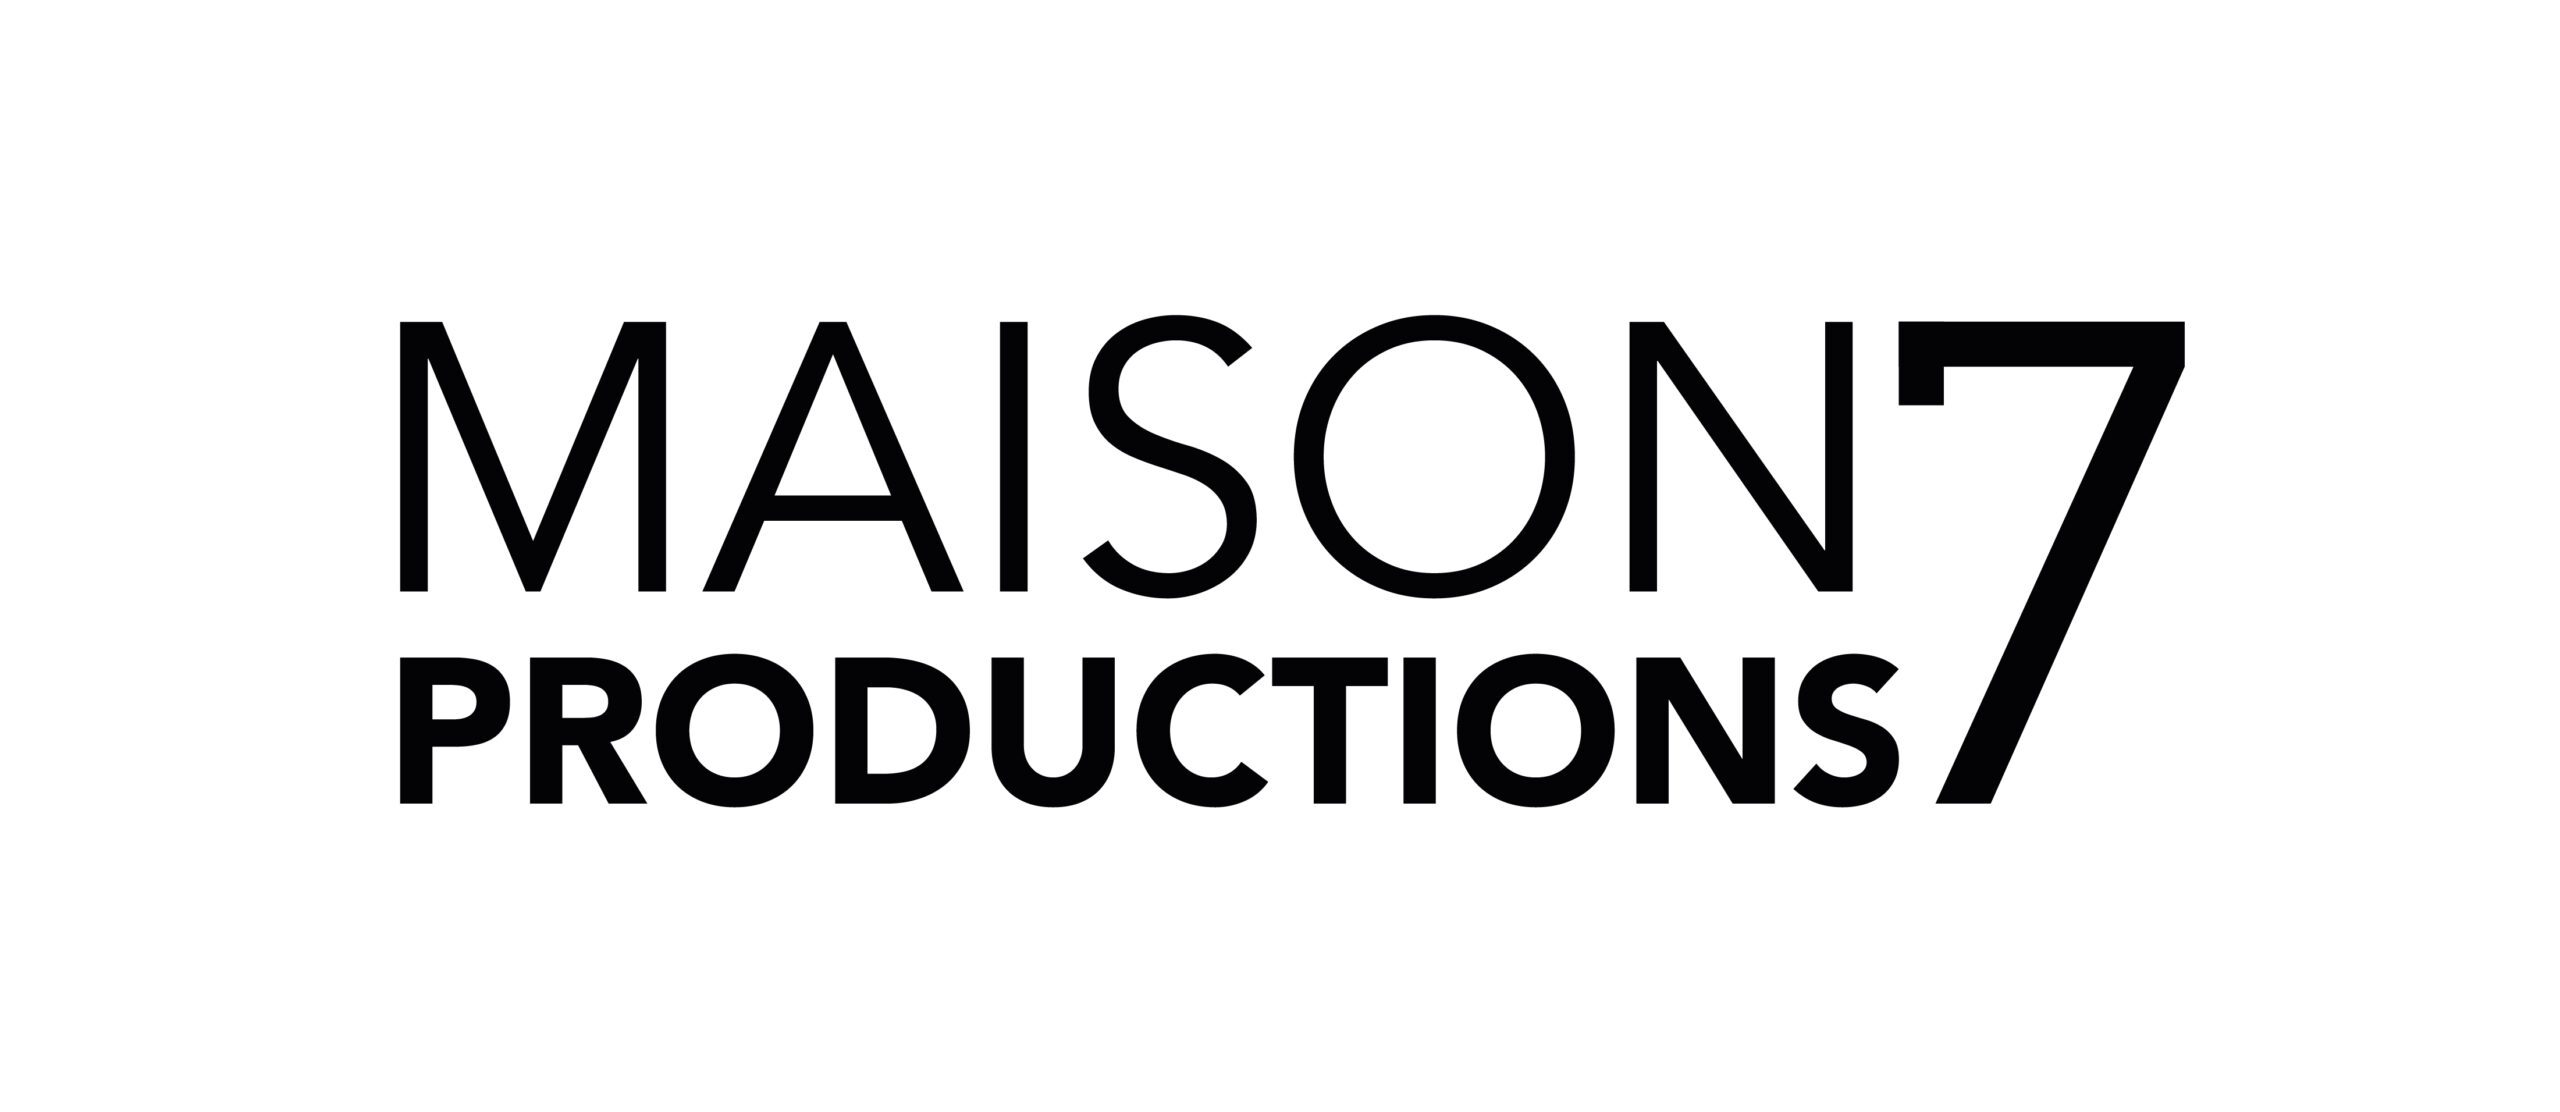 Maison 7 Productions